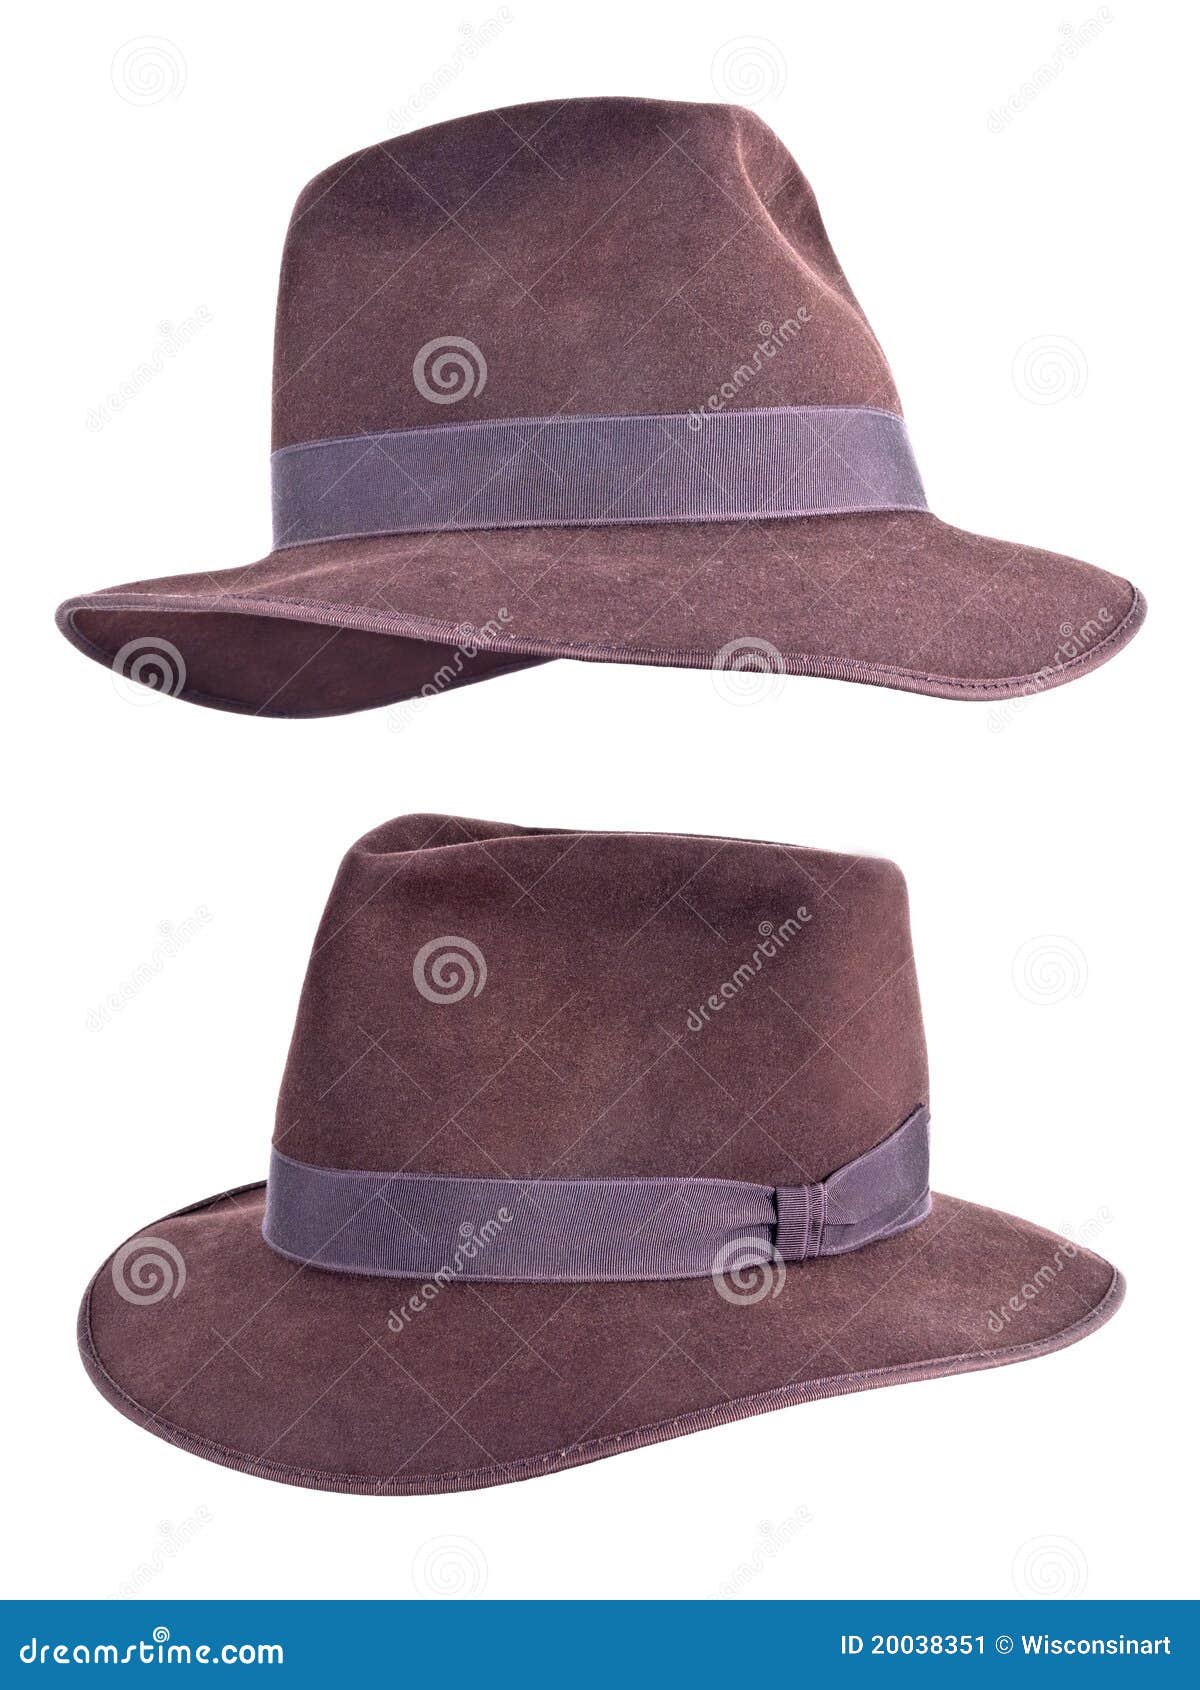 Cappello Di Fedora Del Feltro Di Stile Dell'Indiana Jones Isolato Immagine  Stock - Immagine di feltro, tappeto: 20038351